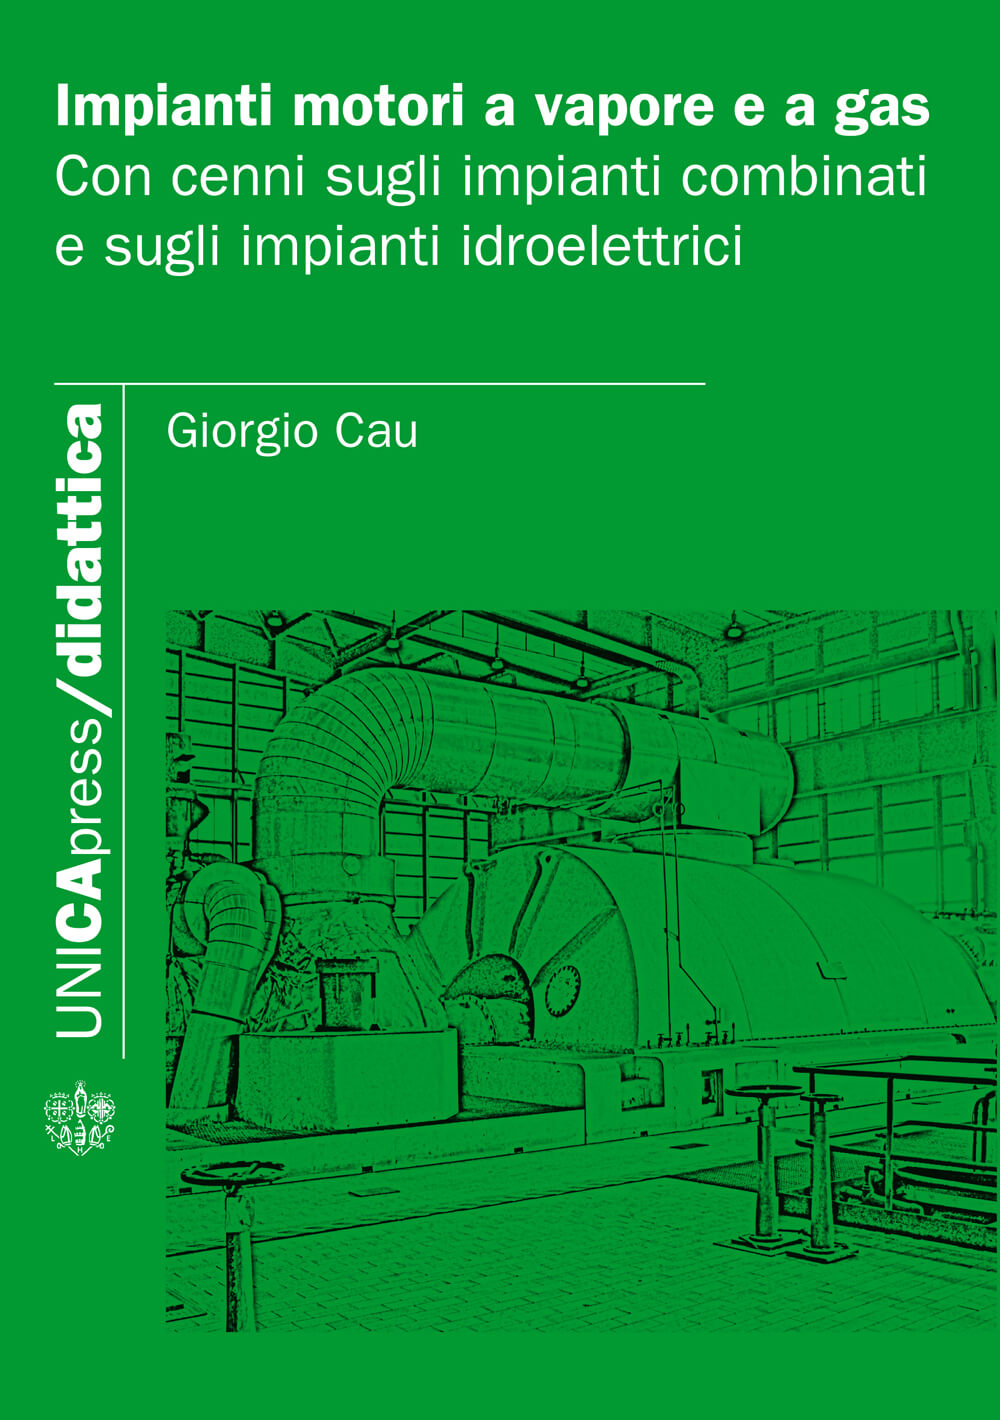 Impianti motori a vapore e a gas - Bologna University Press